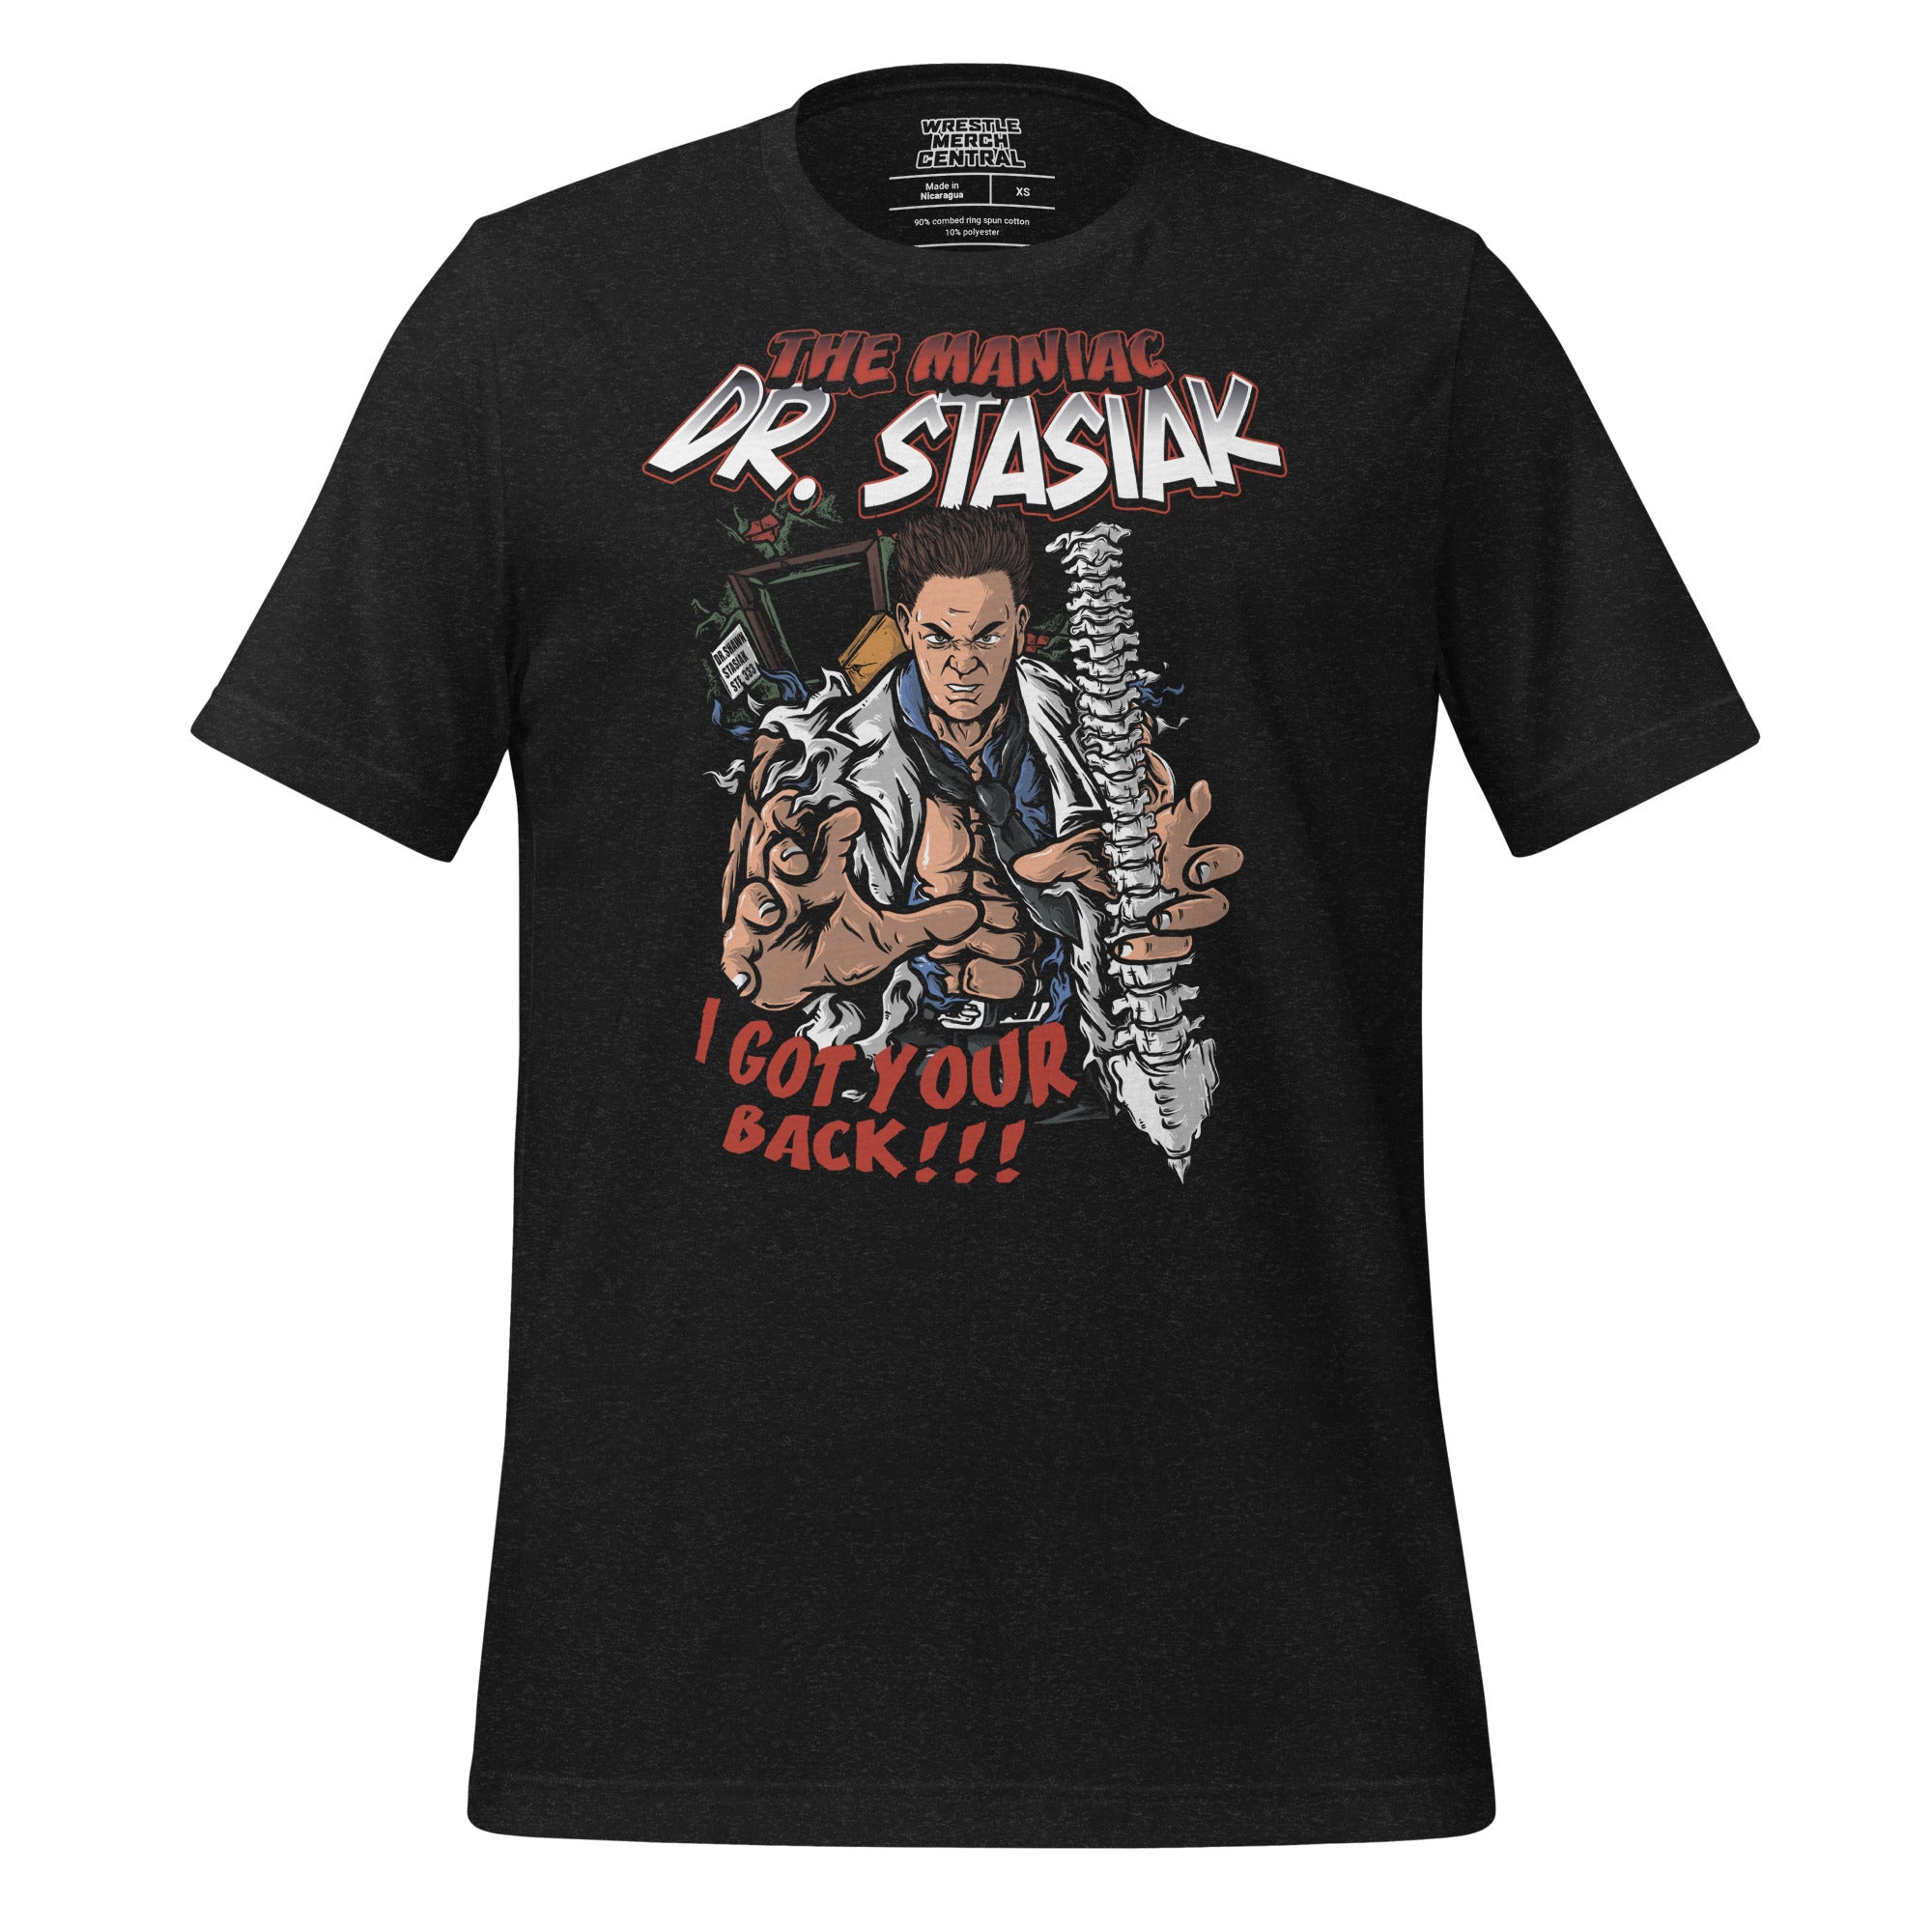 Shawn Stasiak "The Maniac" Dr Stasiak Unisex T-Shirt